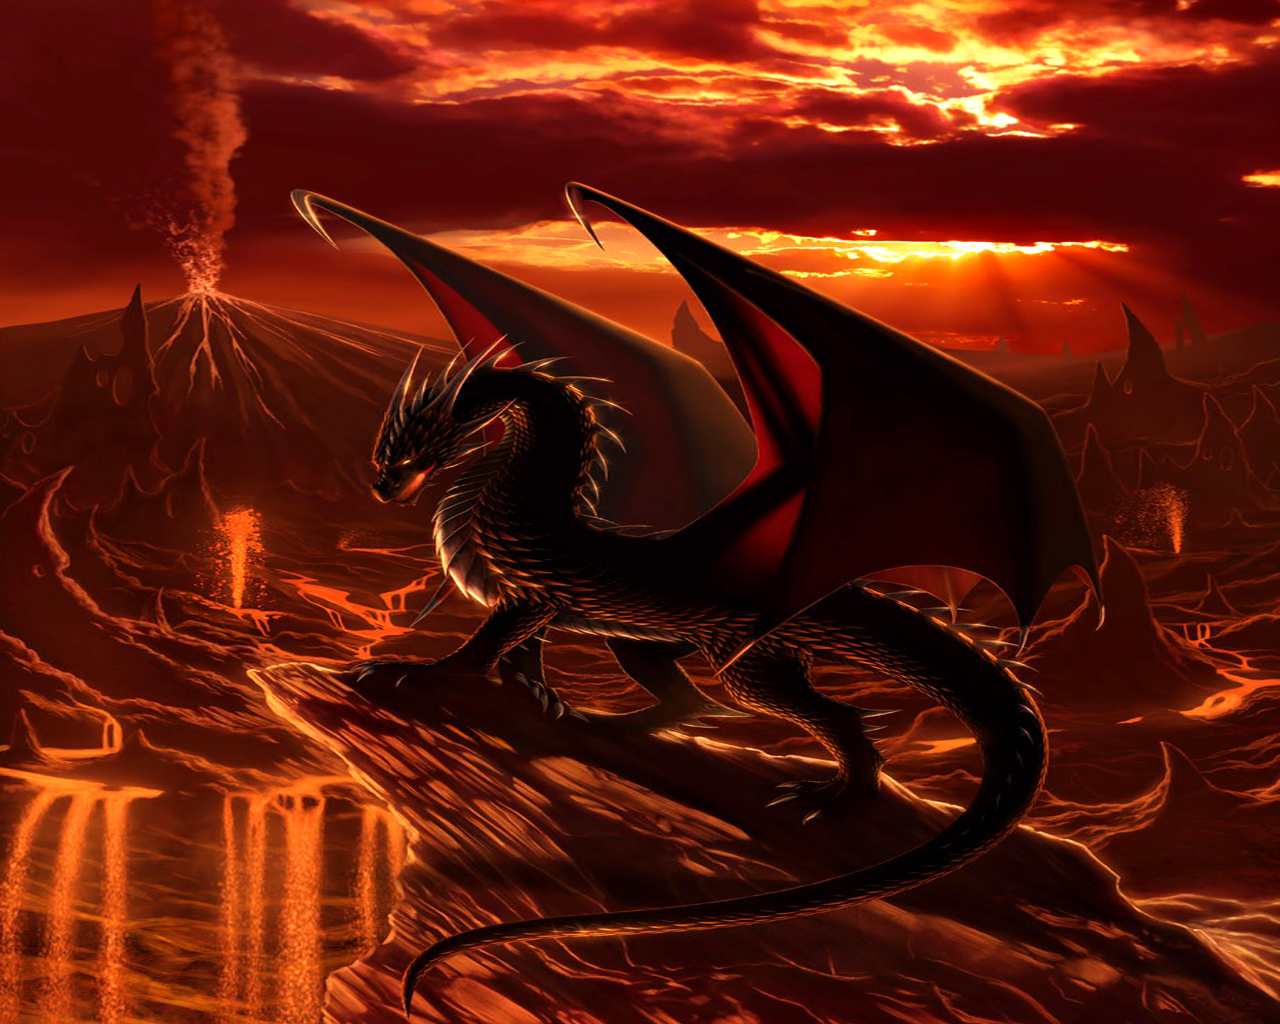 carta da parati drago rosso,drago,cg artwork,personaggio fittizio,creatura mitica,mitologia